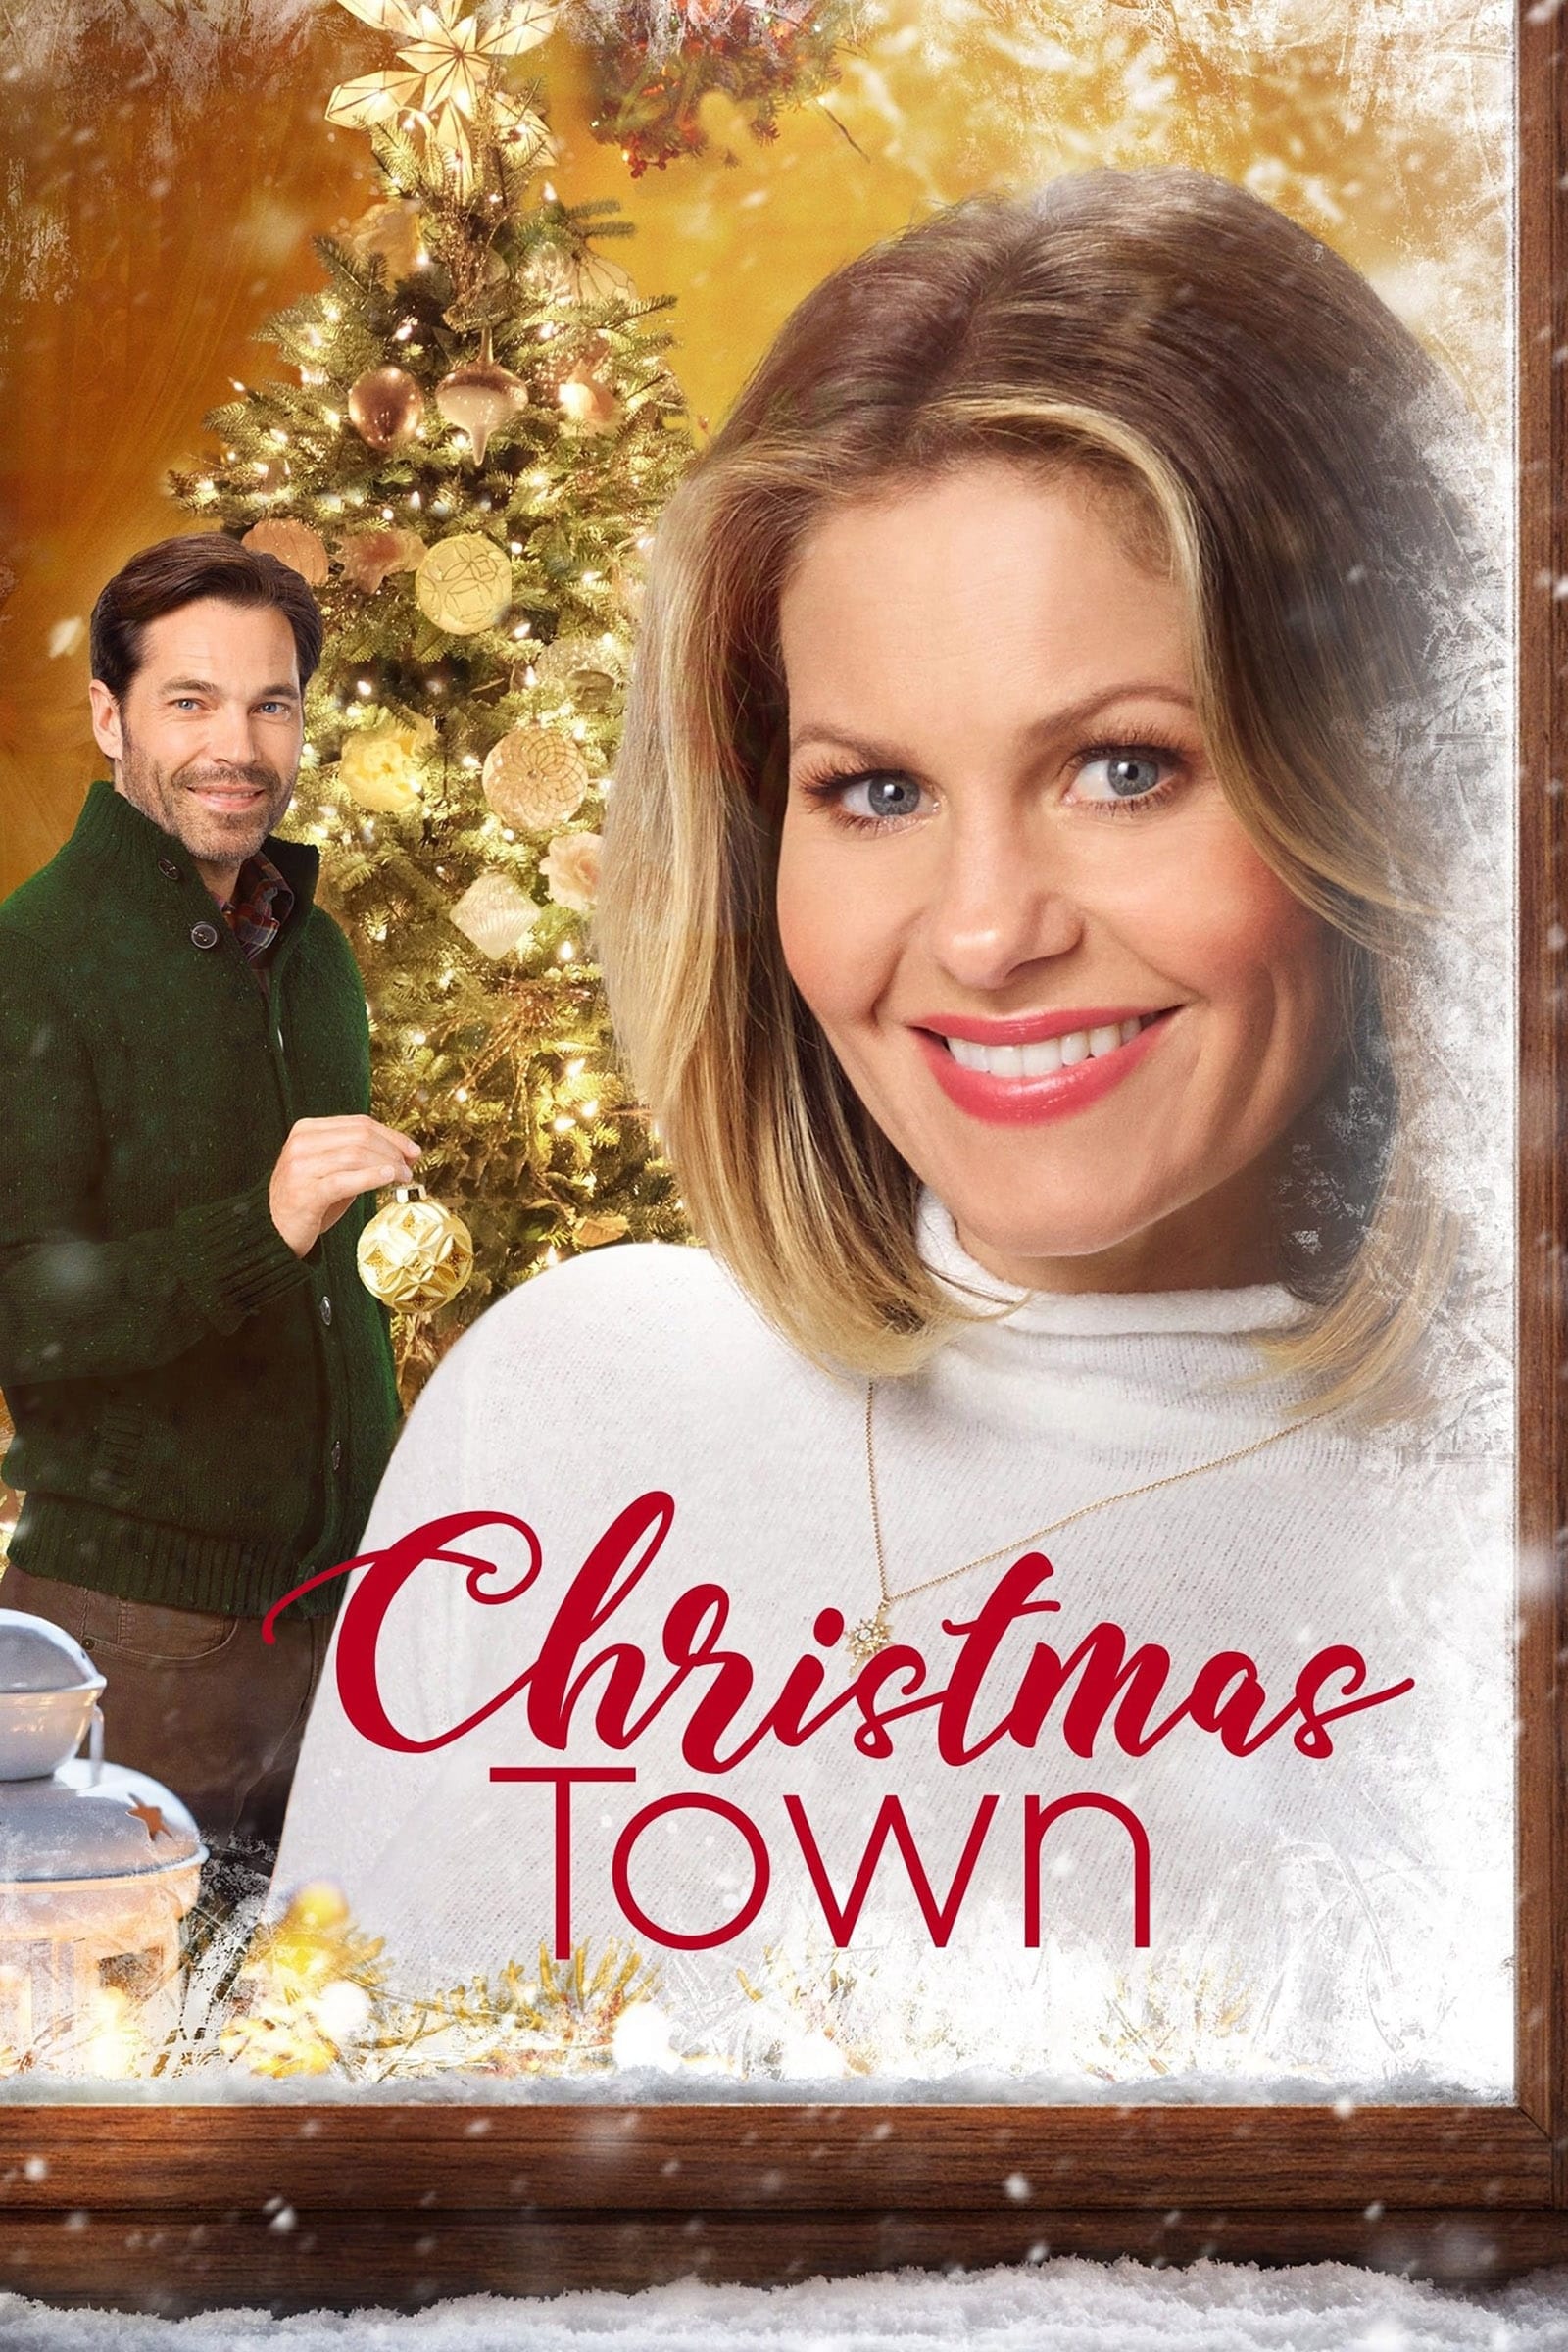 Christmas Town - 14 märchenhafte Weihnachtstage (2019)